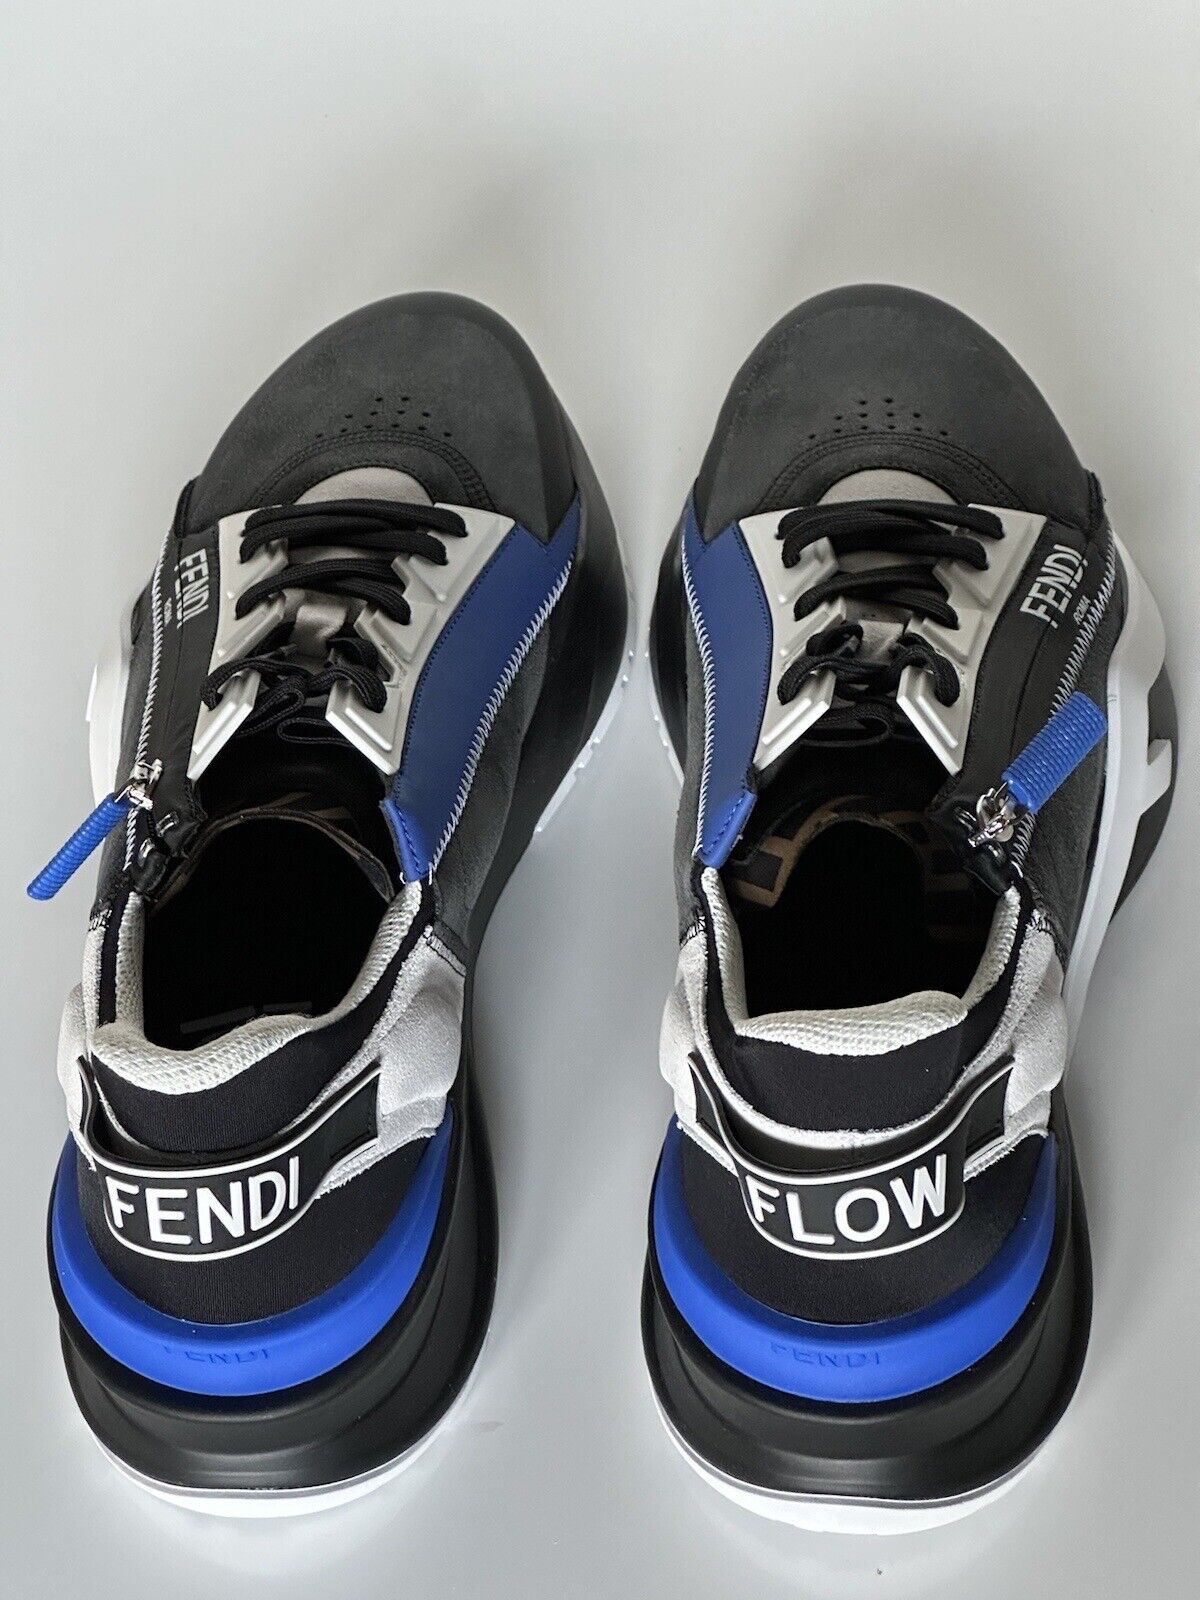 NIB $930 Мужские кроссовки Fendi Flow из кожи/ткани черные/синие 11 US (44) 7E1392